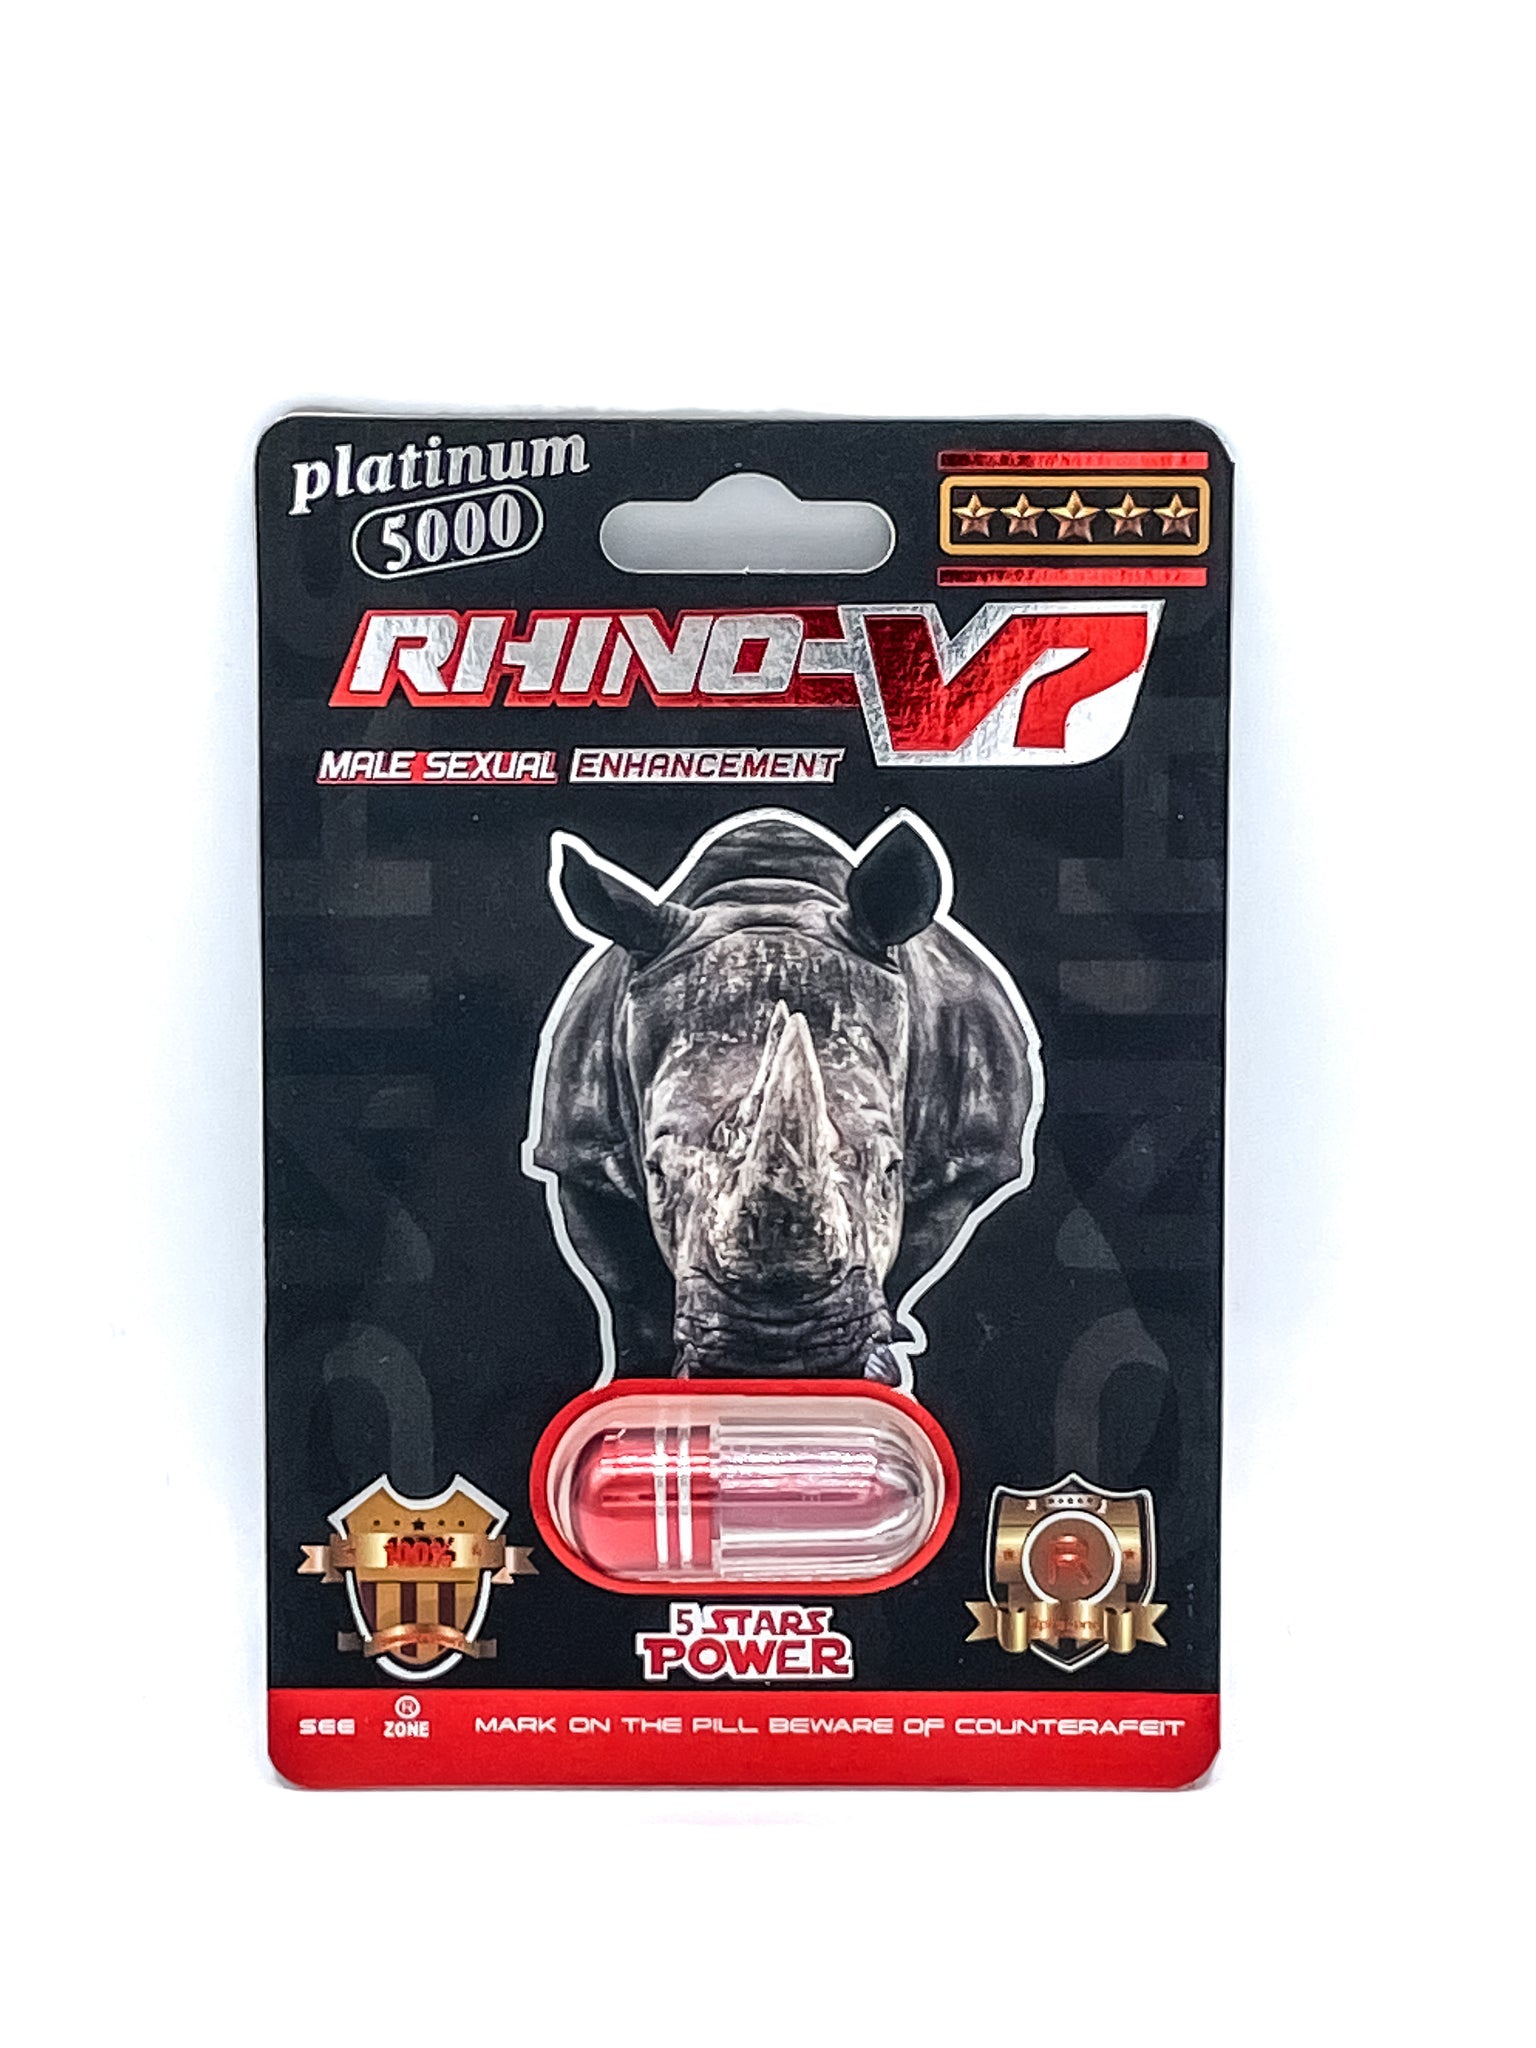 rhino v7 platinum 5000 male sexual enhancement